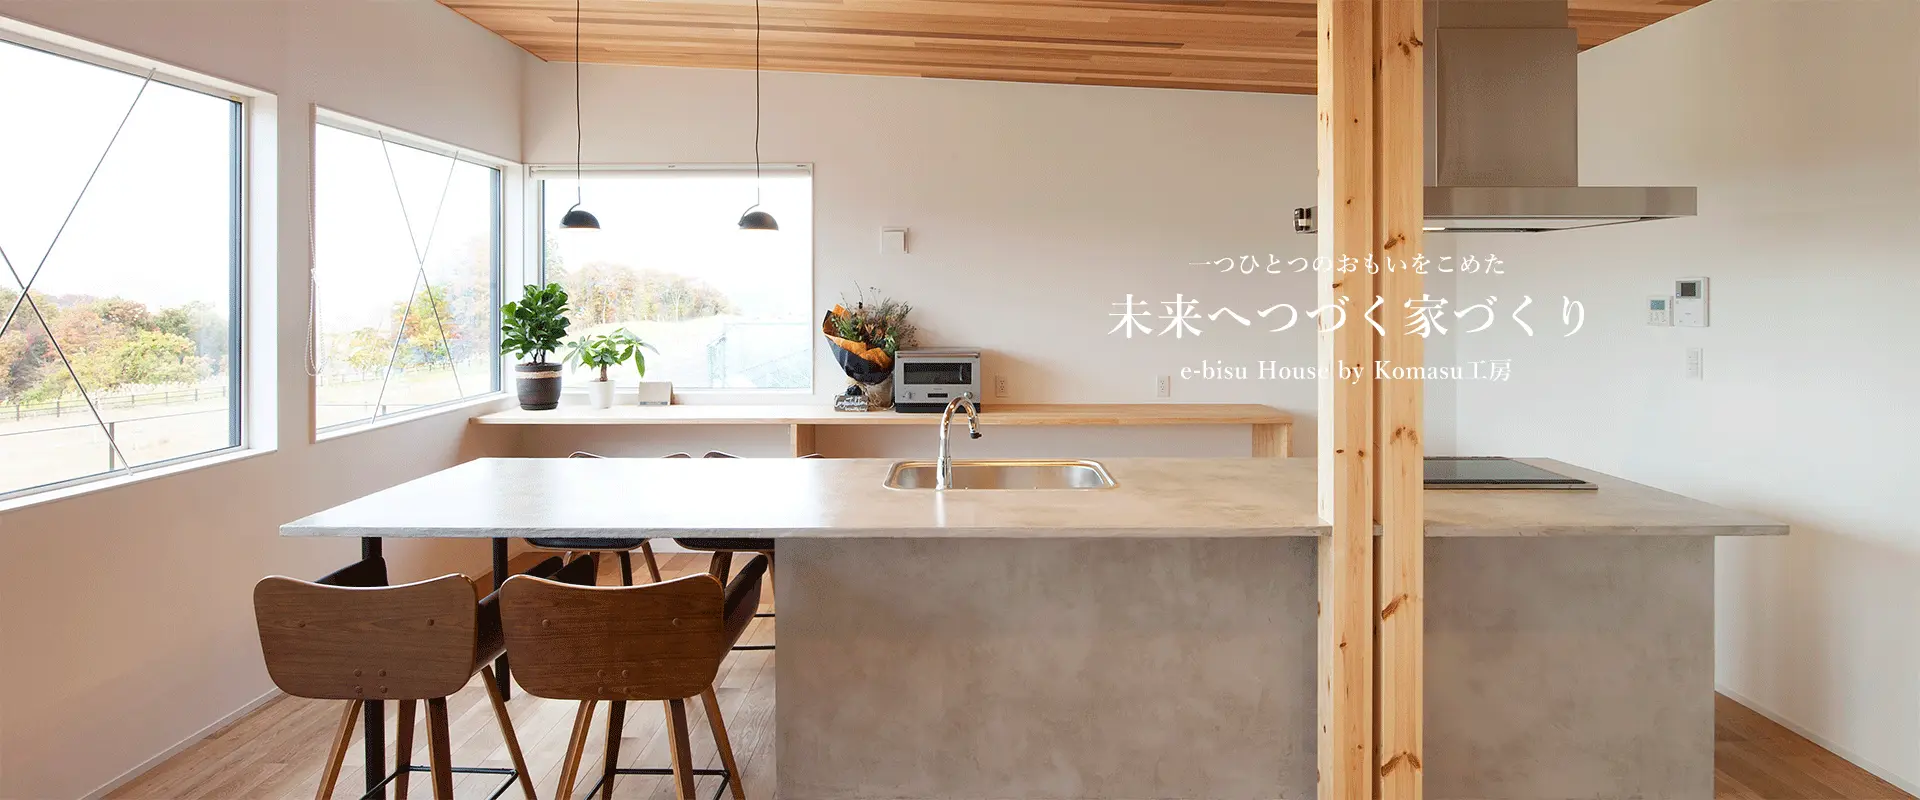 ひとつひとつの思いを込めた、未来へつづく、家づくり、e-bisu House by Komasu工房　施工事例2